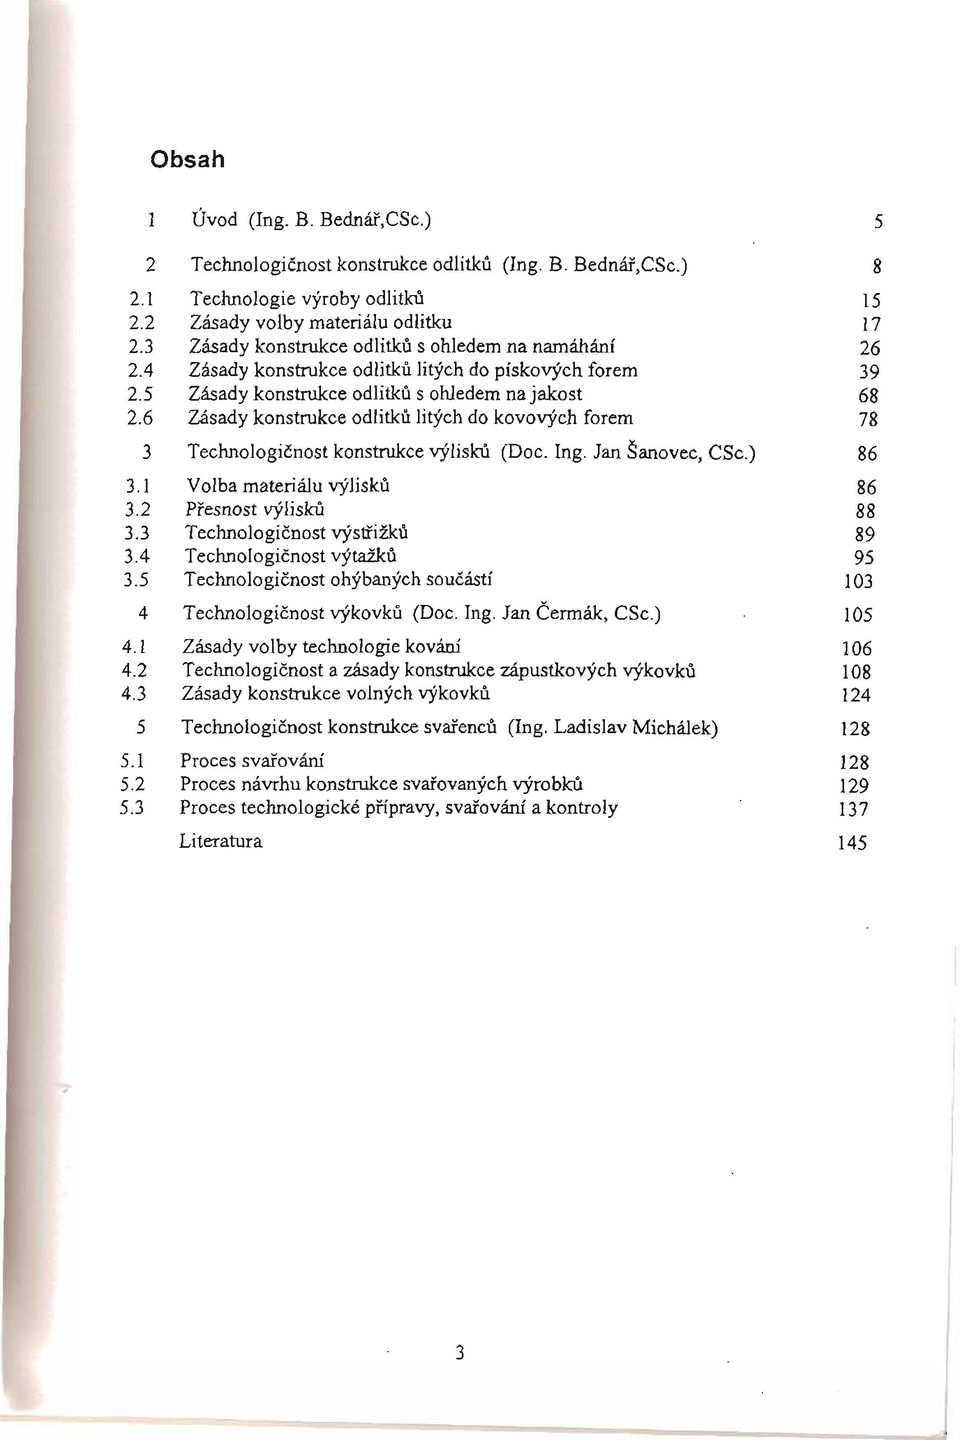 6 Zásady konstrukce odlitku litých do kovových forem 78 3 Technologicnost konstrukce výlisku (Doc. Ing. Jan Šanovec, CSc.) 86 3.1 Volba materiálu výlisku 86 3.2 Presnost výlisku 88 3.